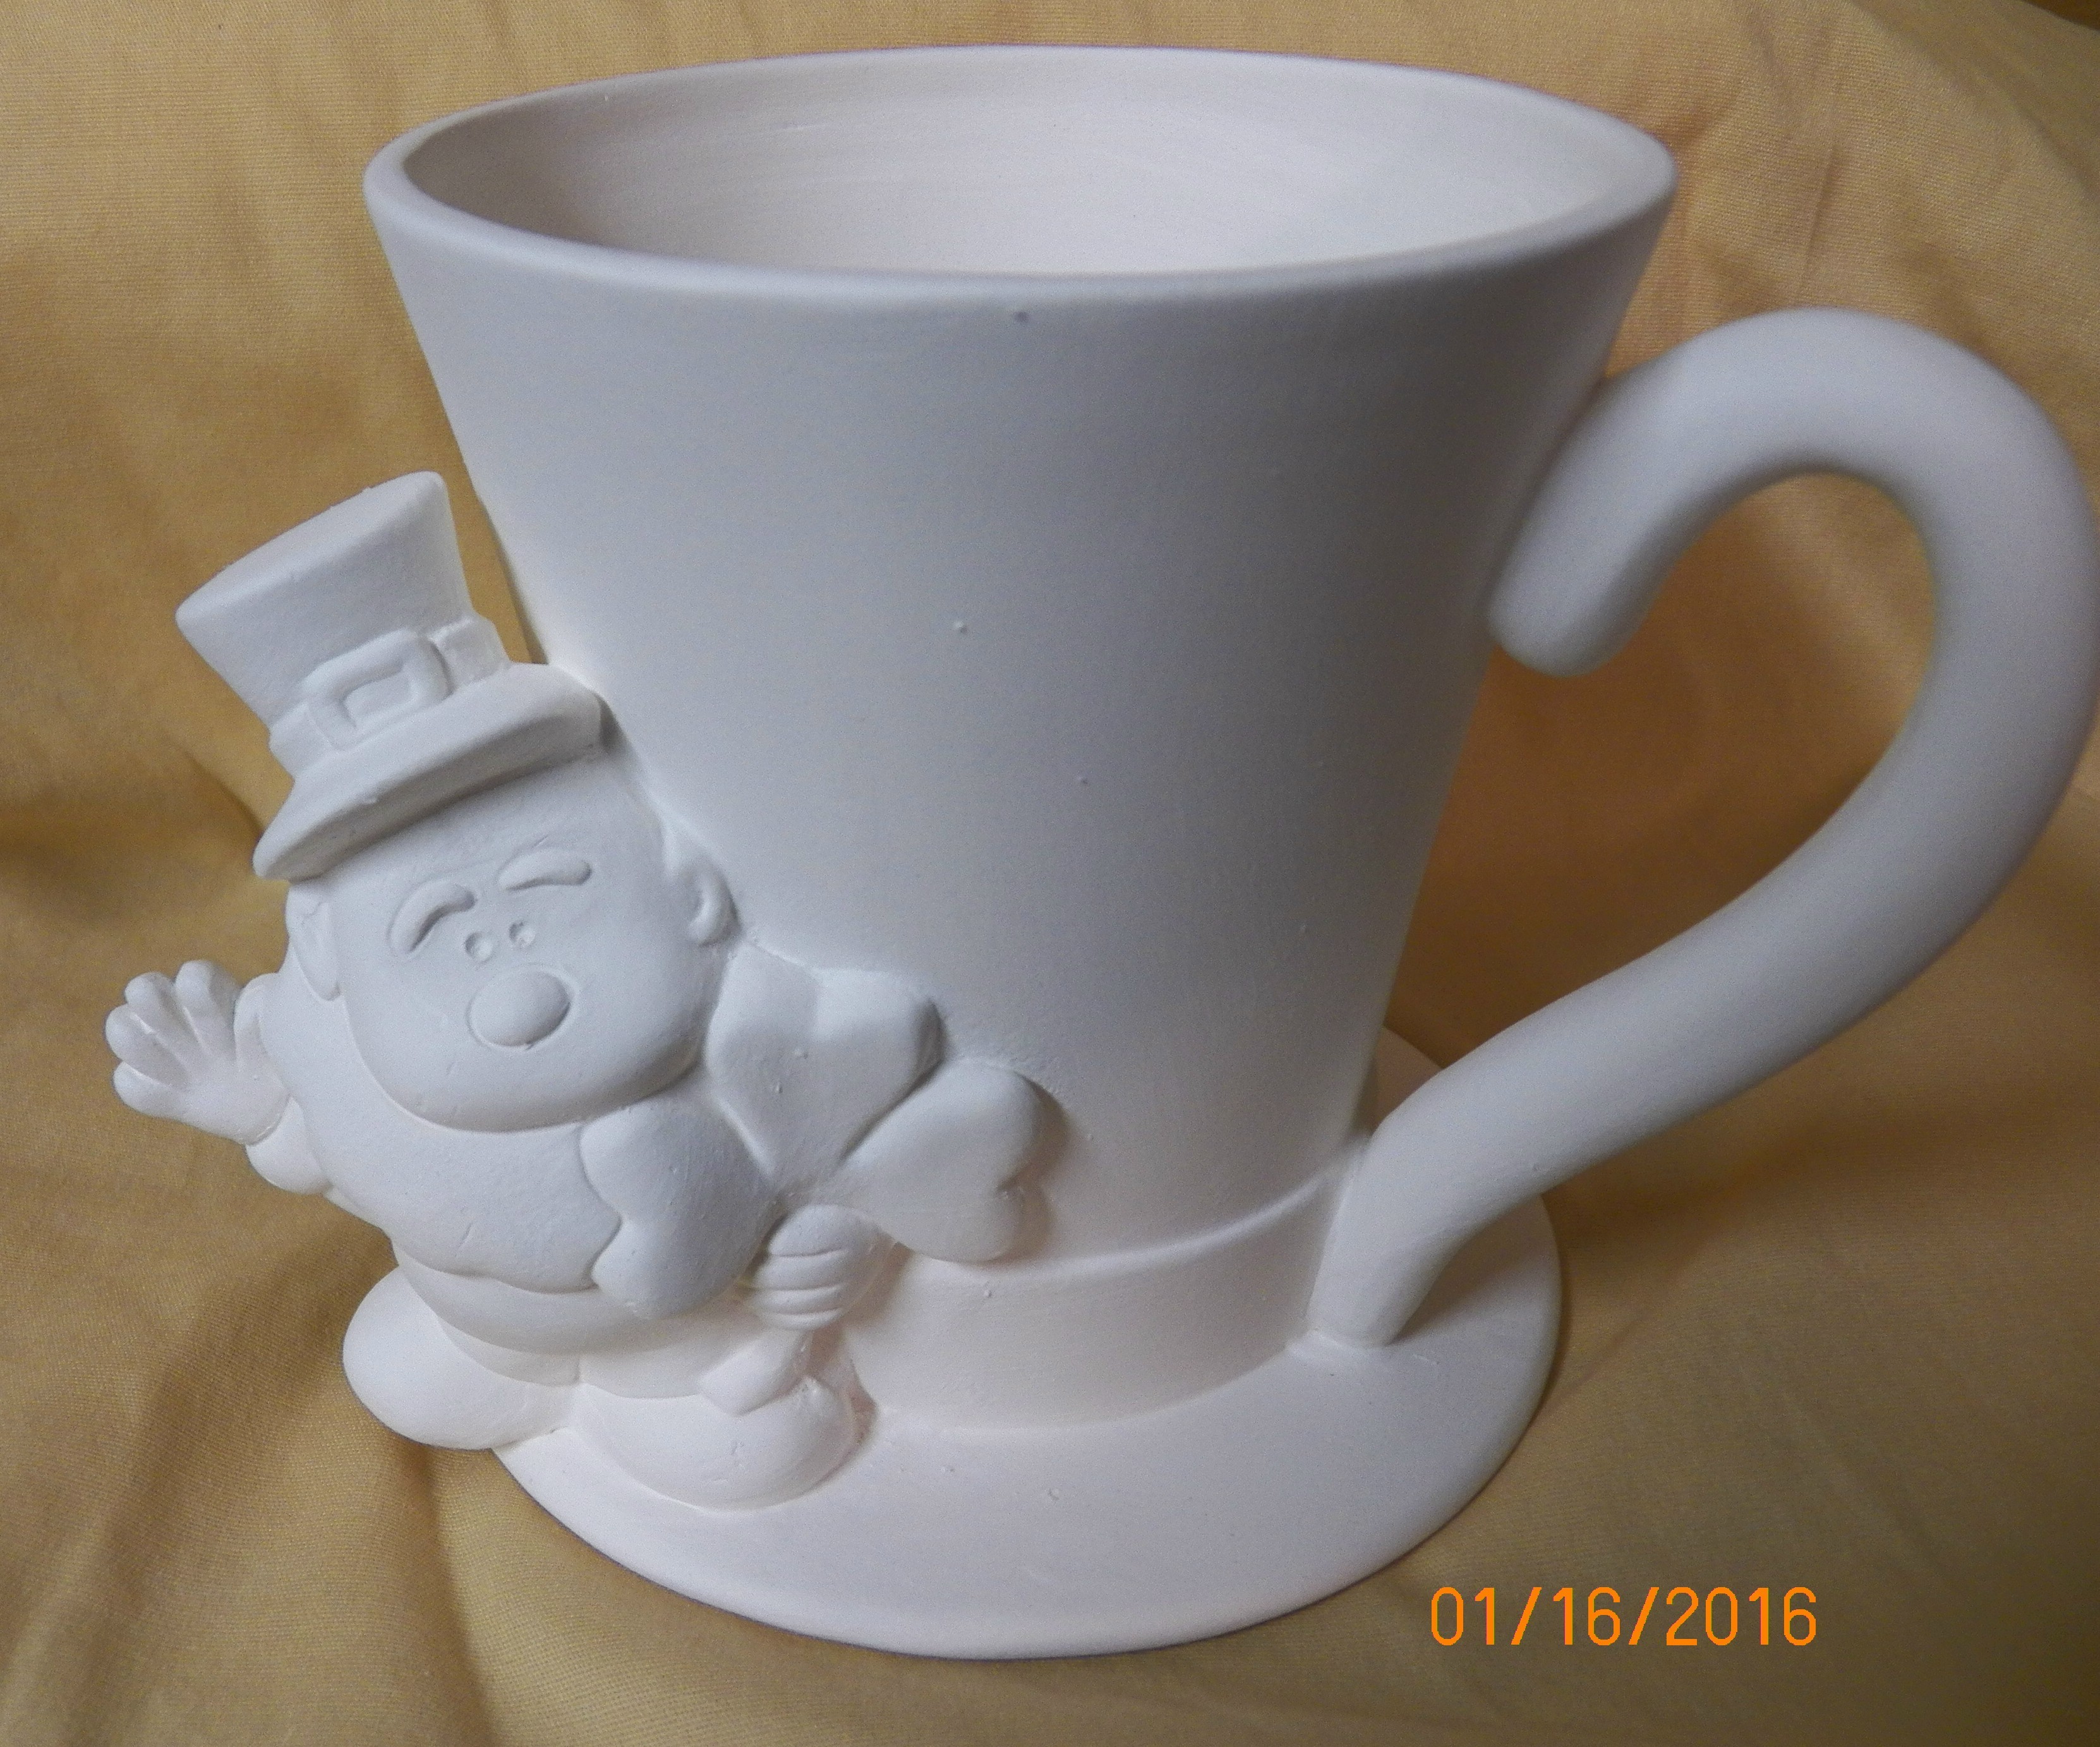 leprechaun and mug